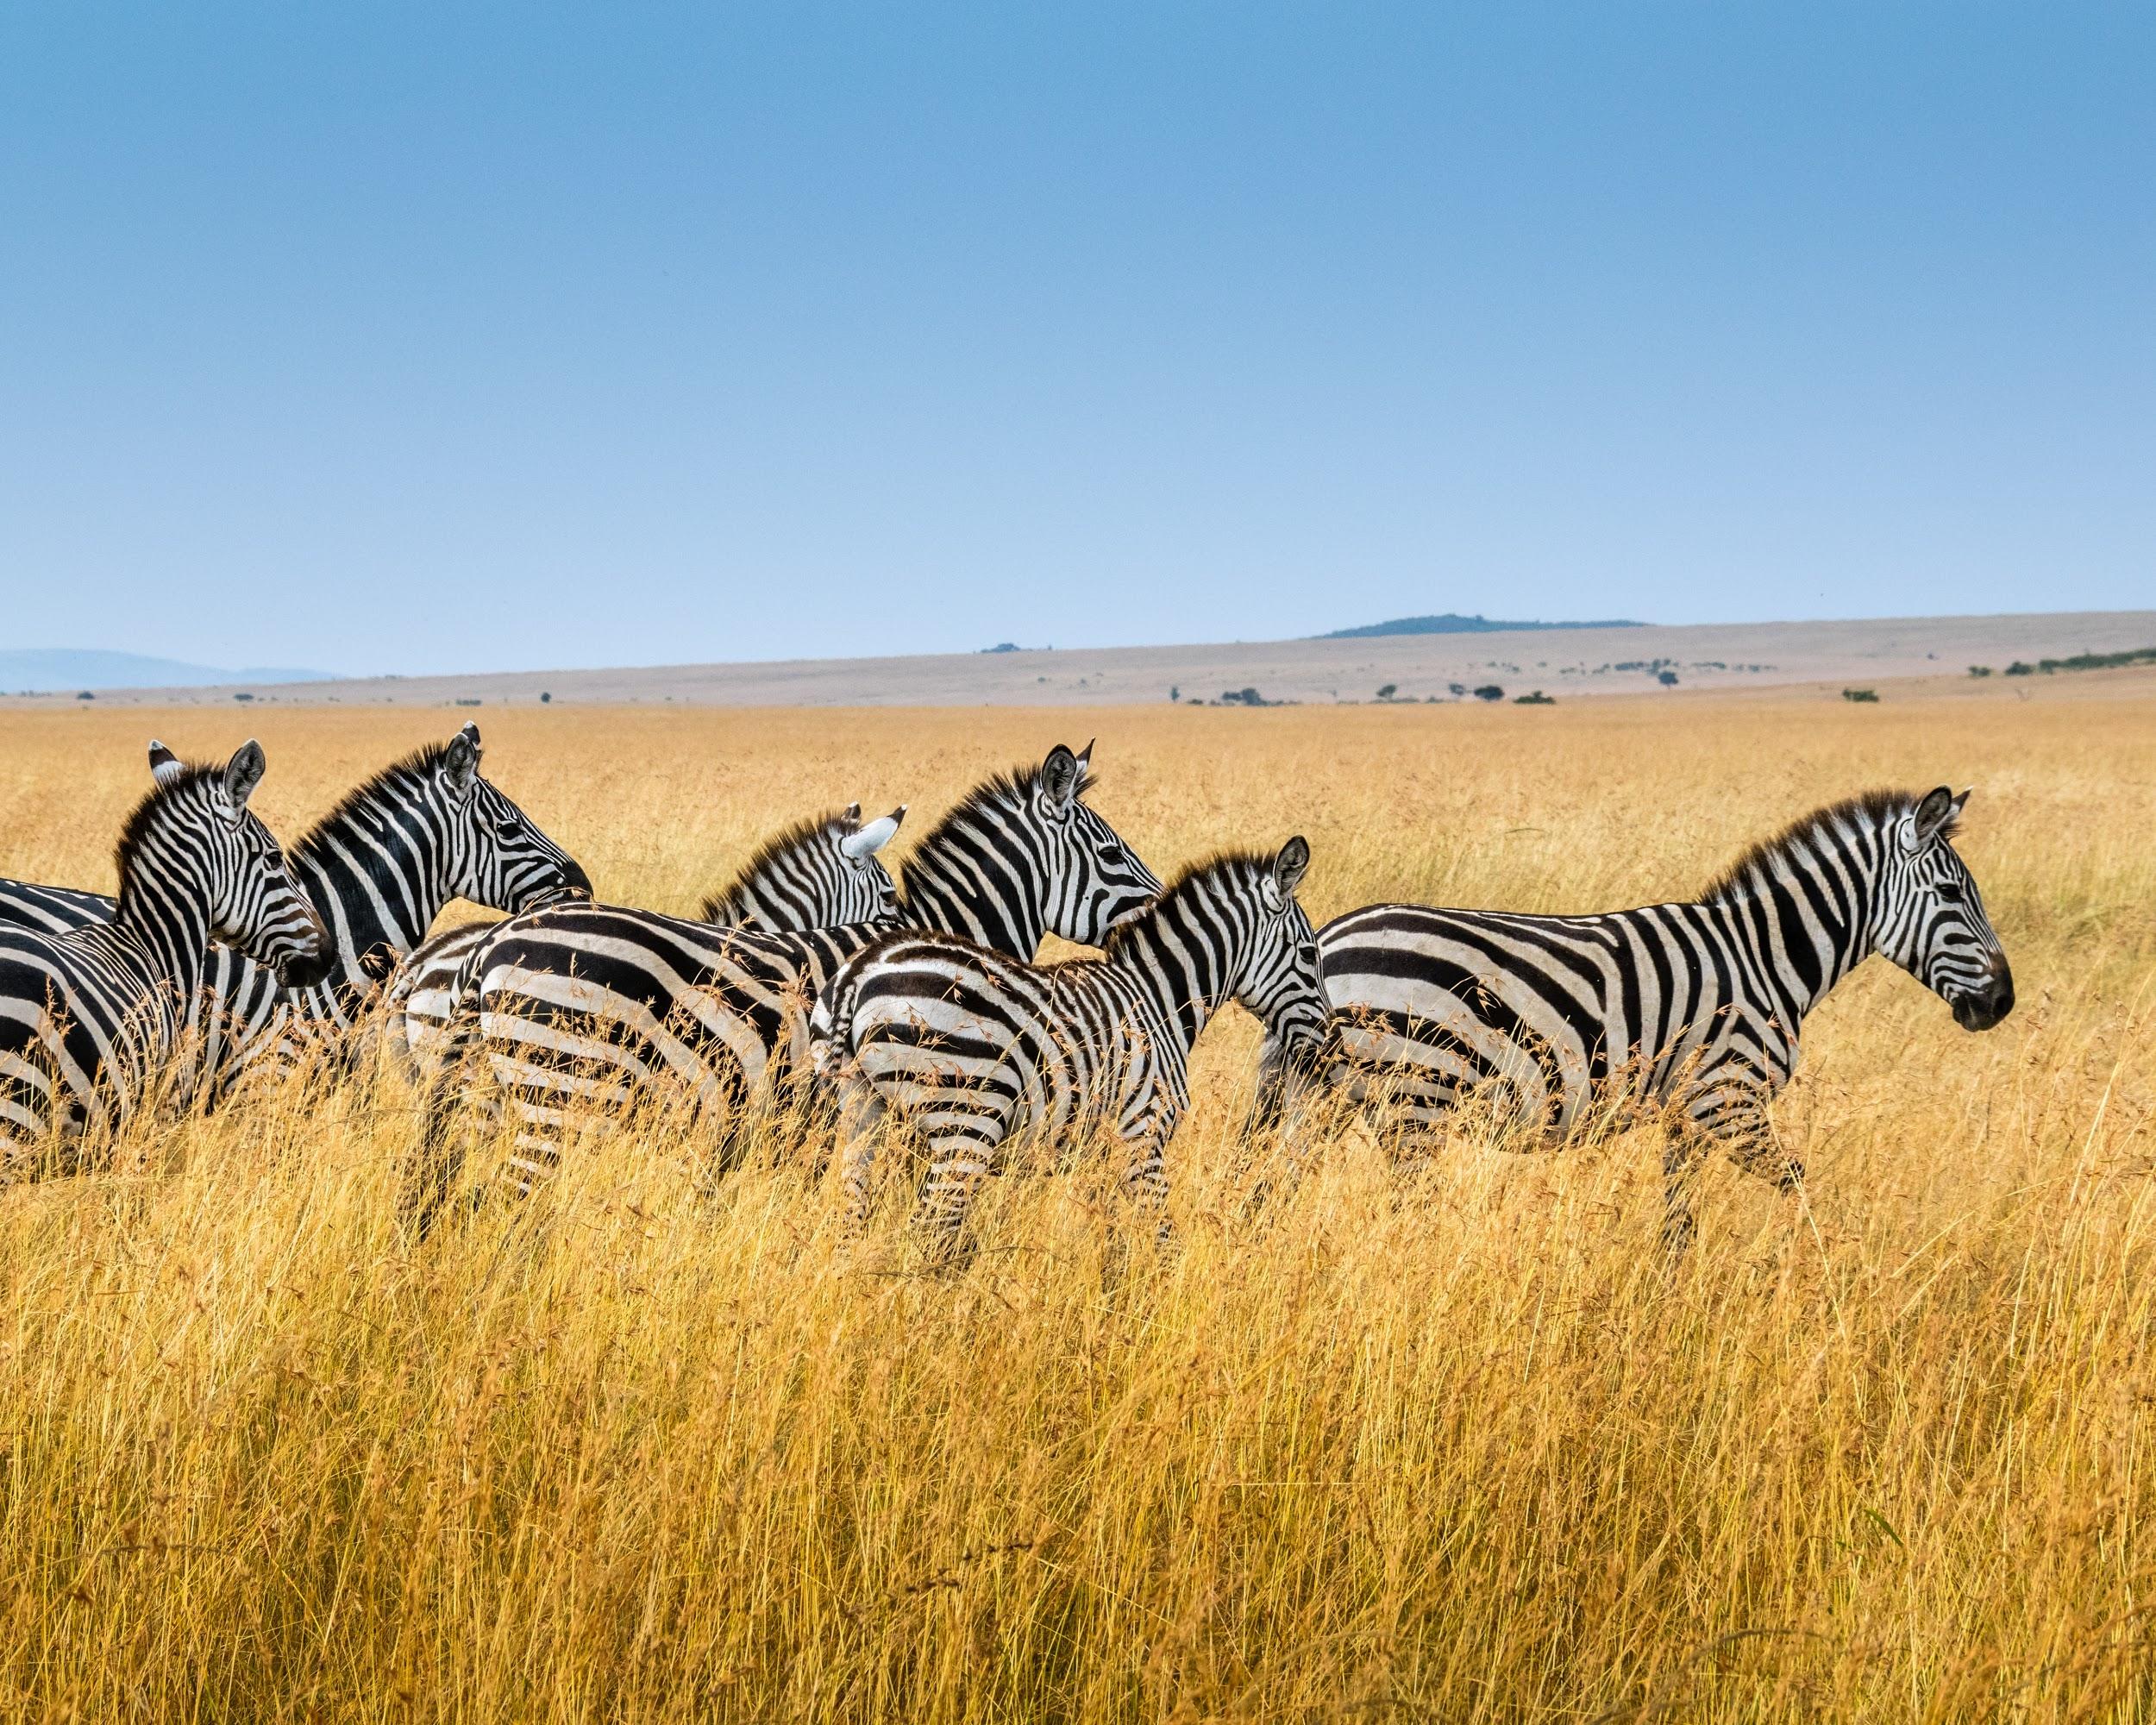 Kenia ist berühmt für seine atemberaubende Natur und Artenvielfalt.